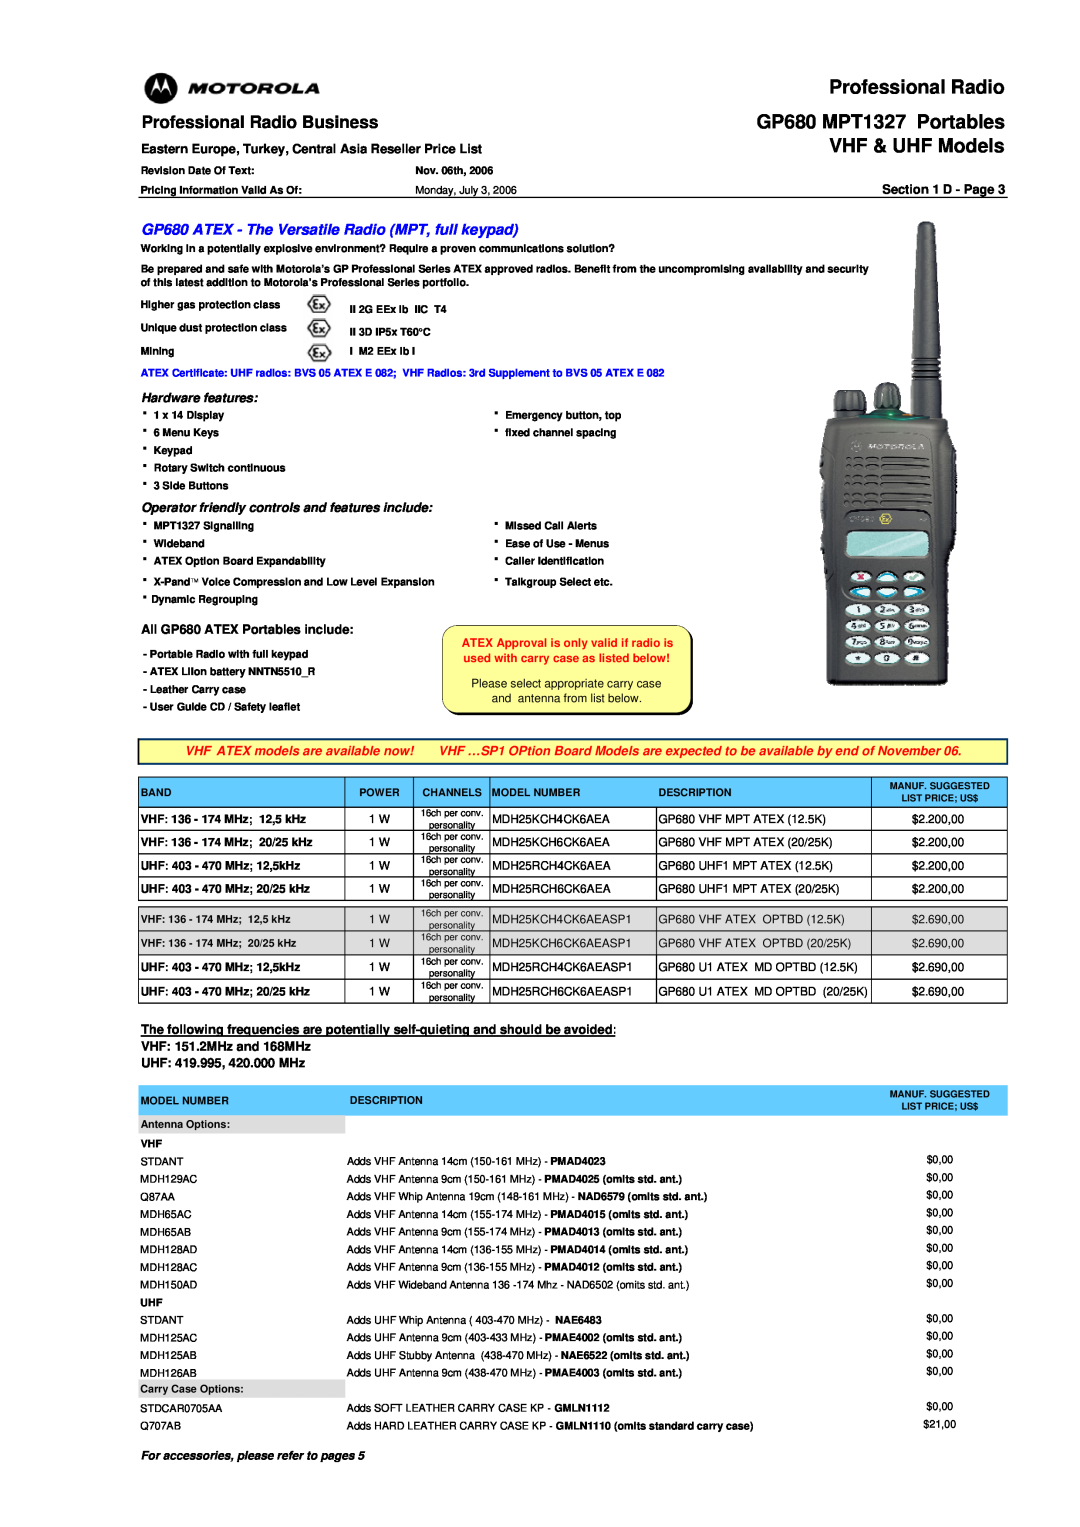 Motorola GP340 ATEX manual GP680 ATEX - The Versatile Radio MPT, full keypad 